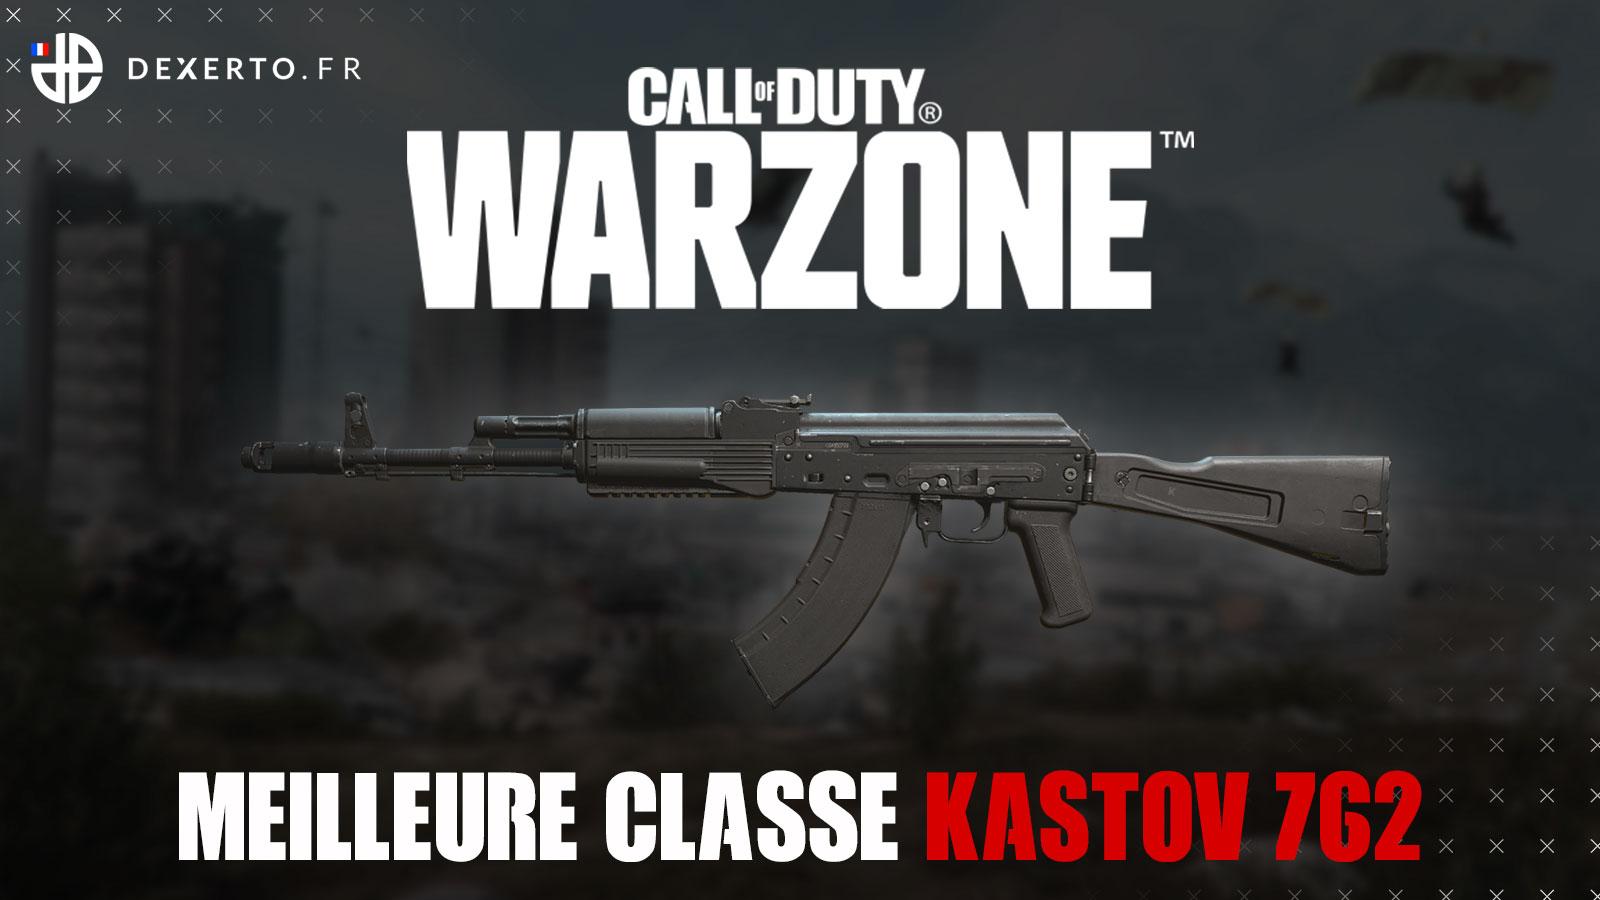 Warzone Kastov 762 classe